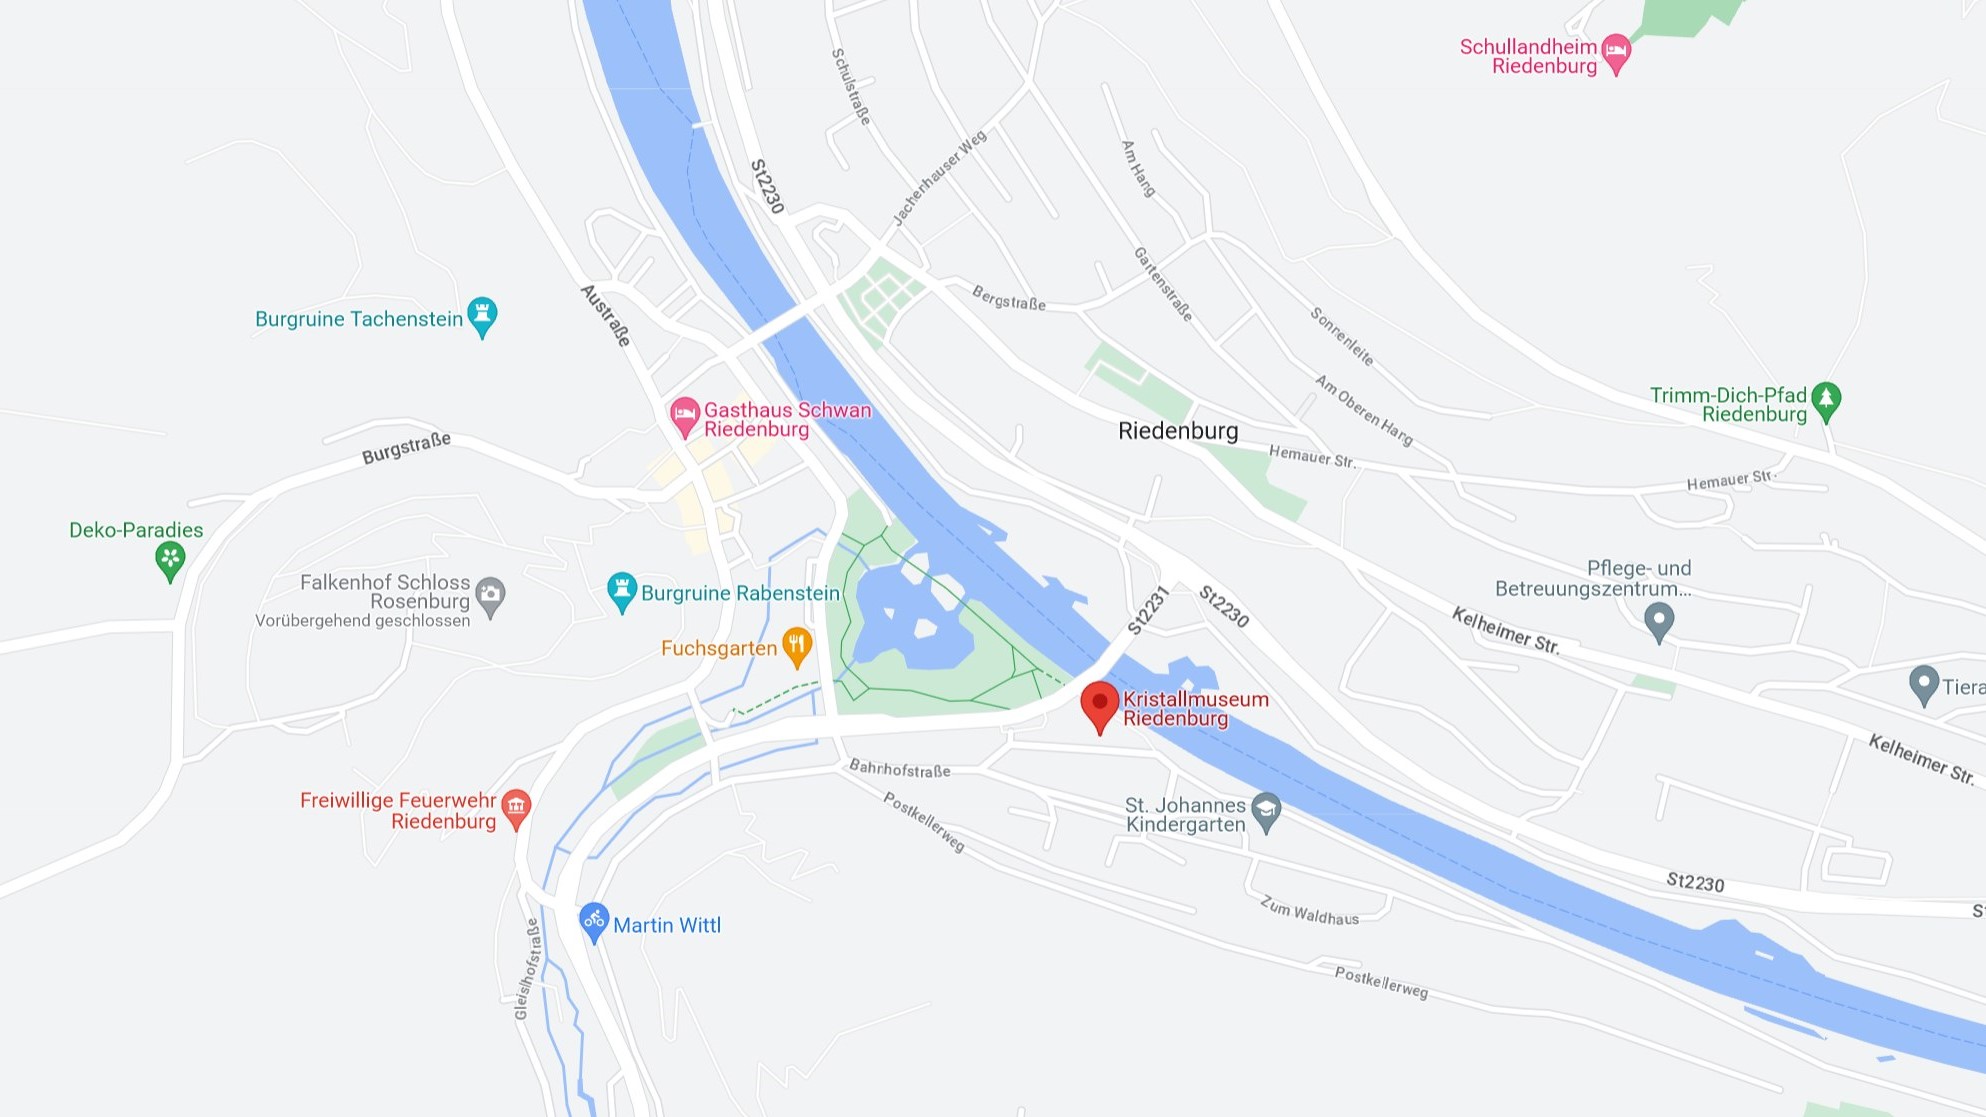 Riedenburg in Google Maps